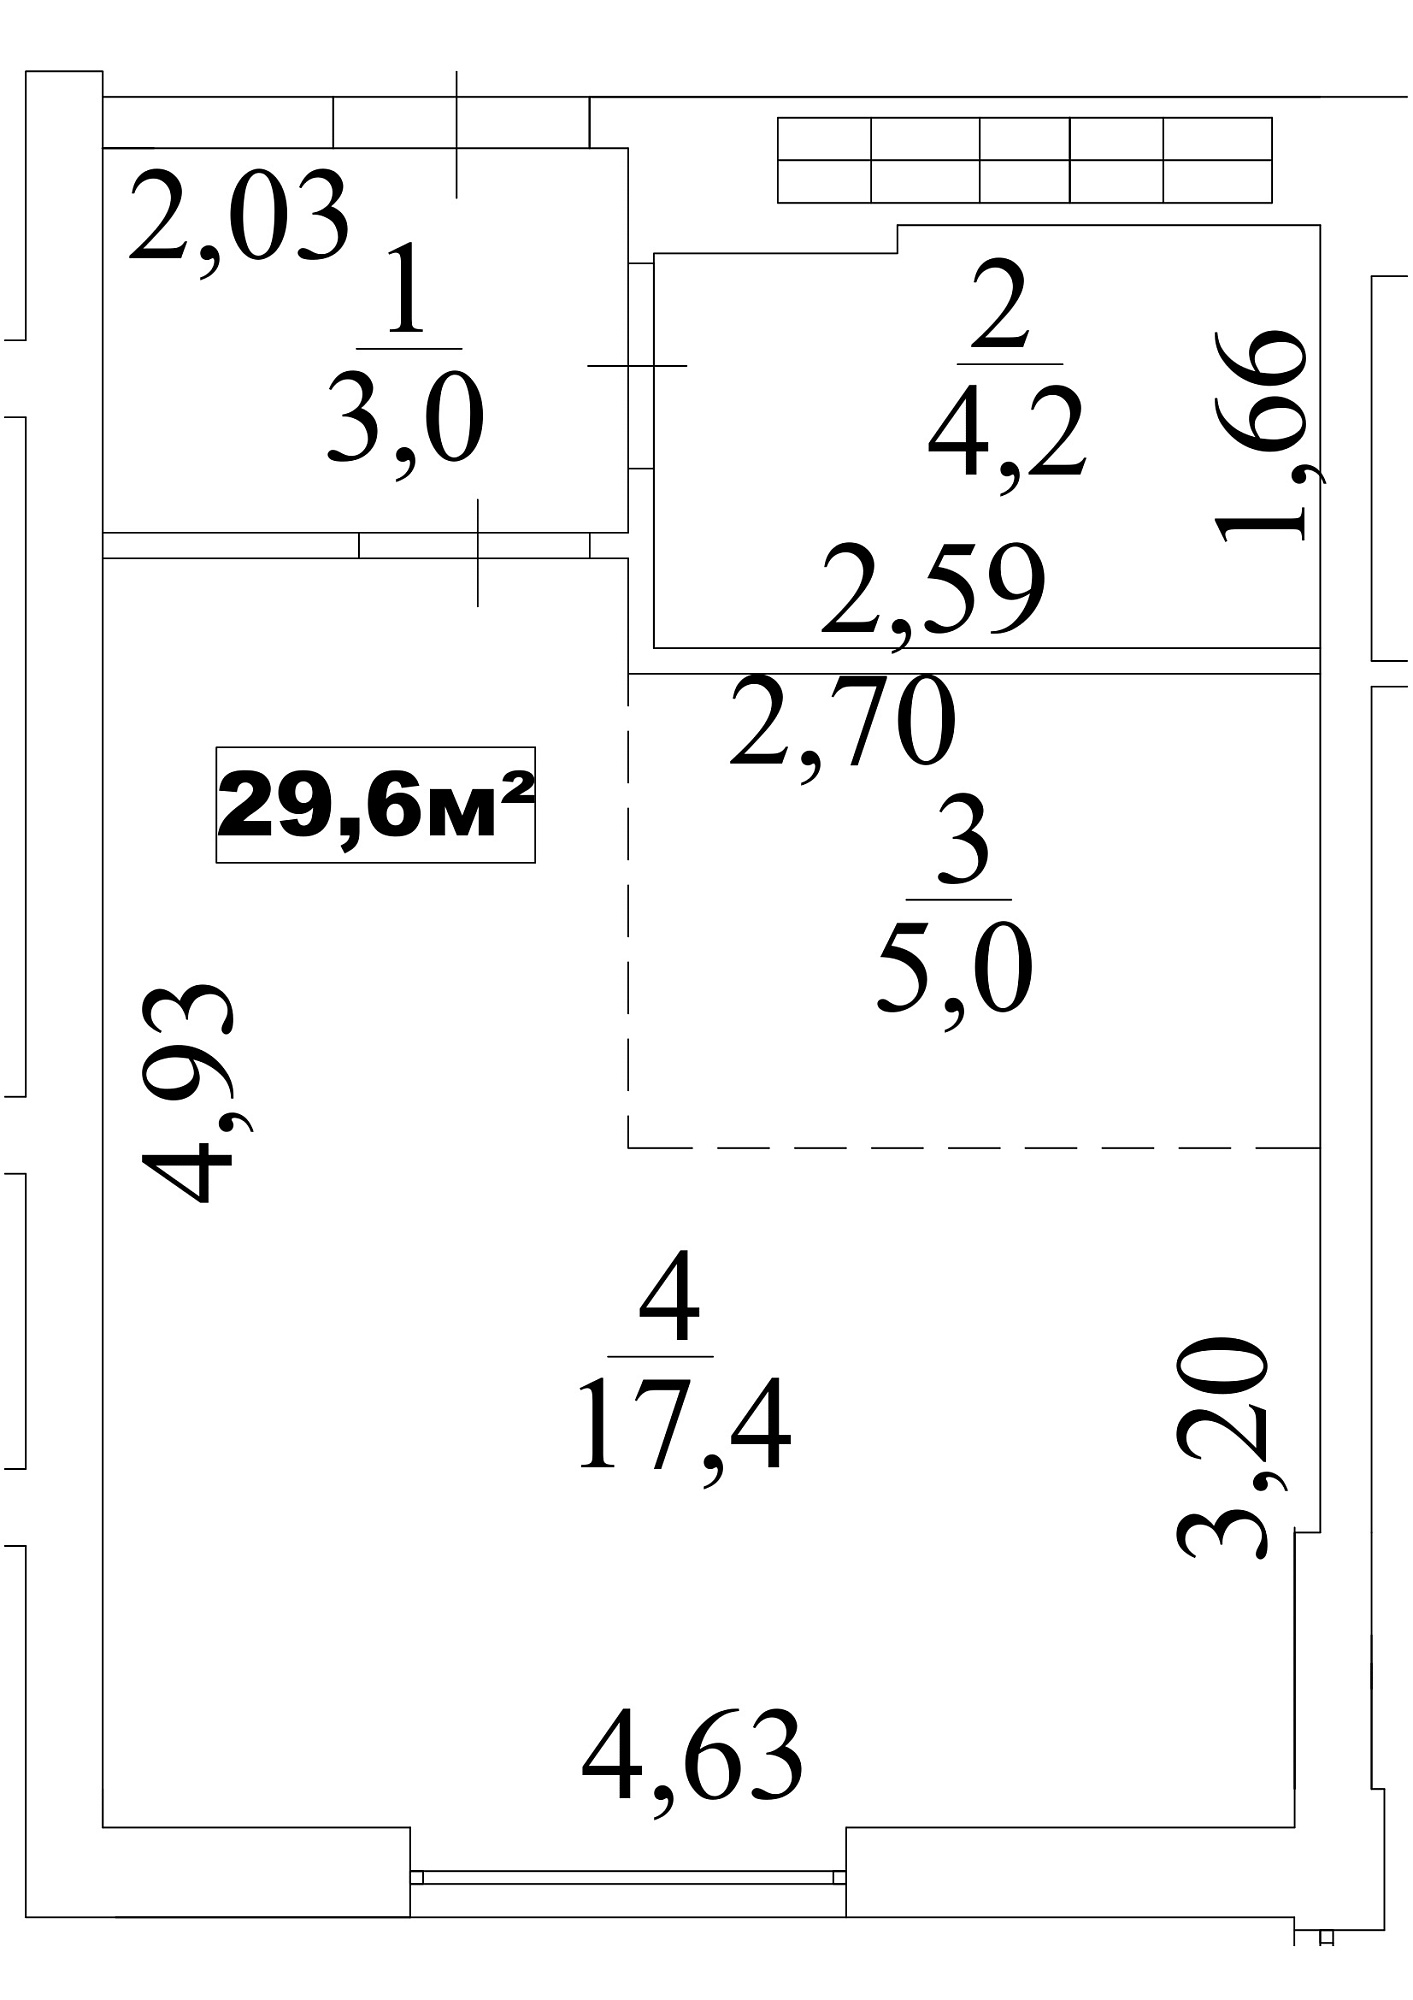 Планування Smart-квартира площею 29.6м2, AB-10-05/00045.